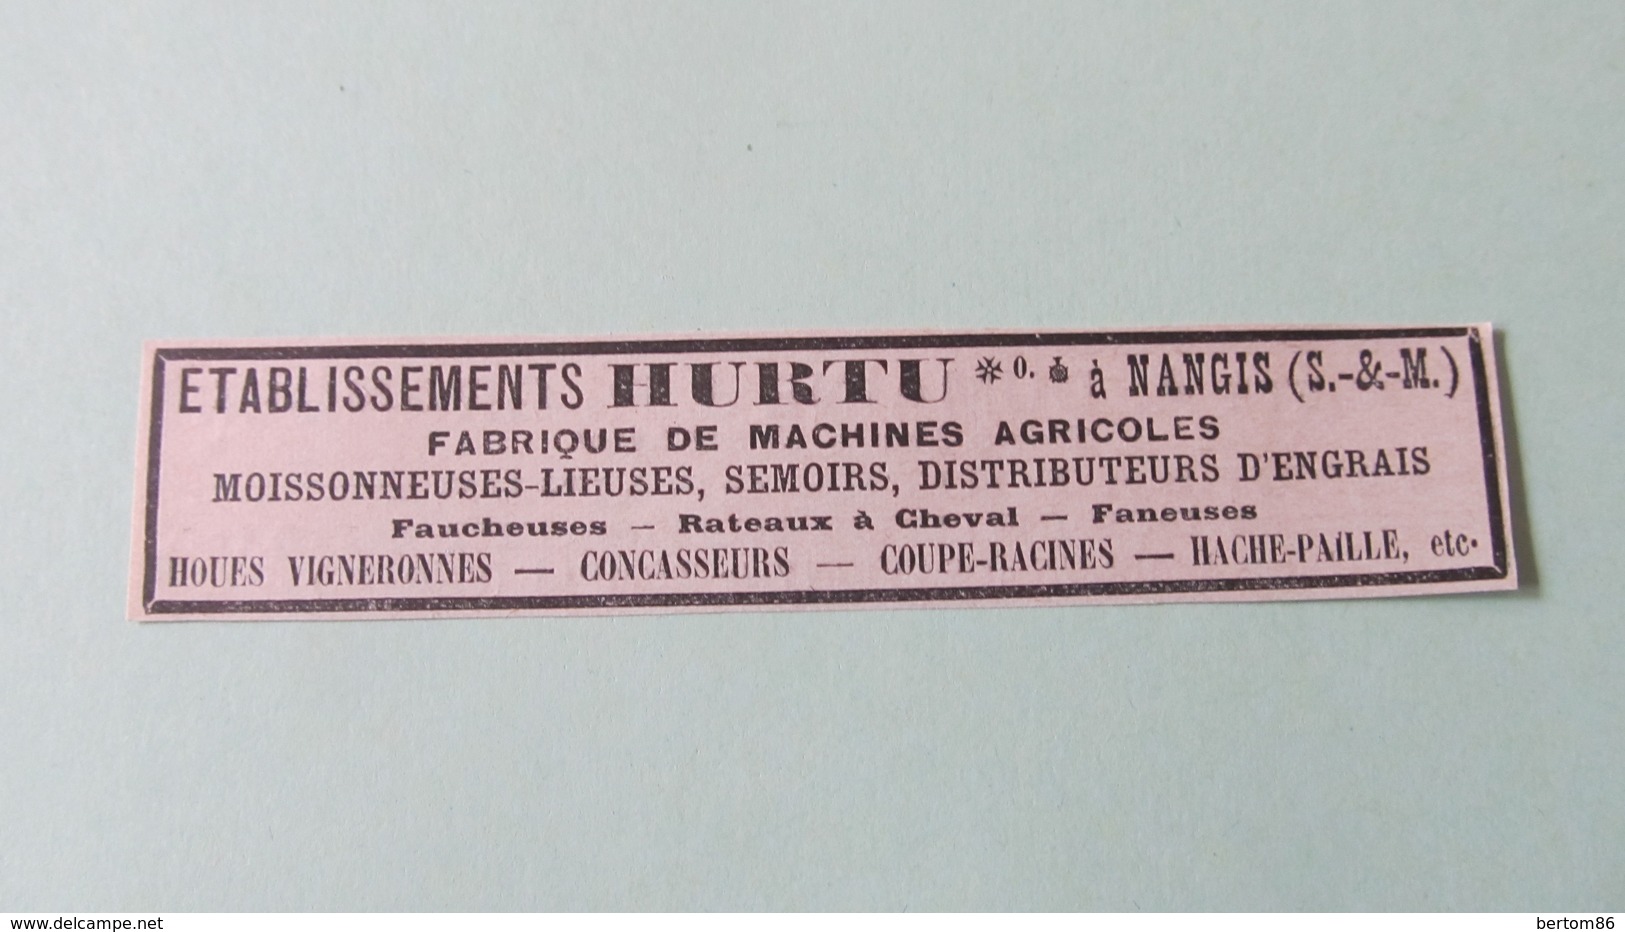 ETABLISSEMENTS HURTU à NANGIS - FABRIQUE DE MACHINES AGRICOLES  -  PUBLICITE DE 1925. - Publicités